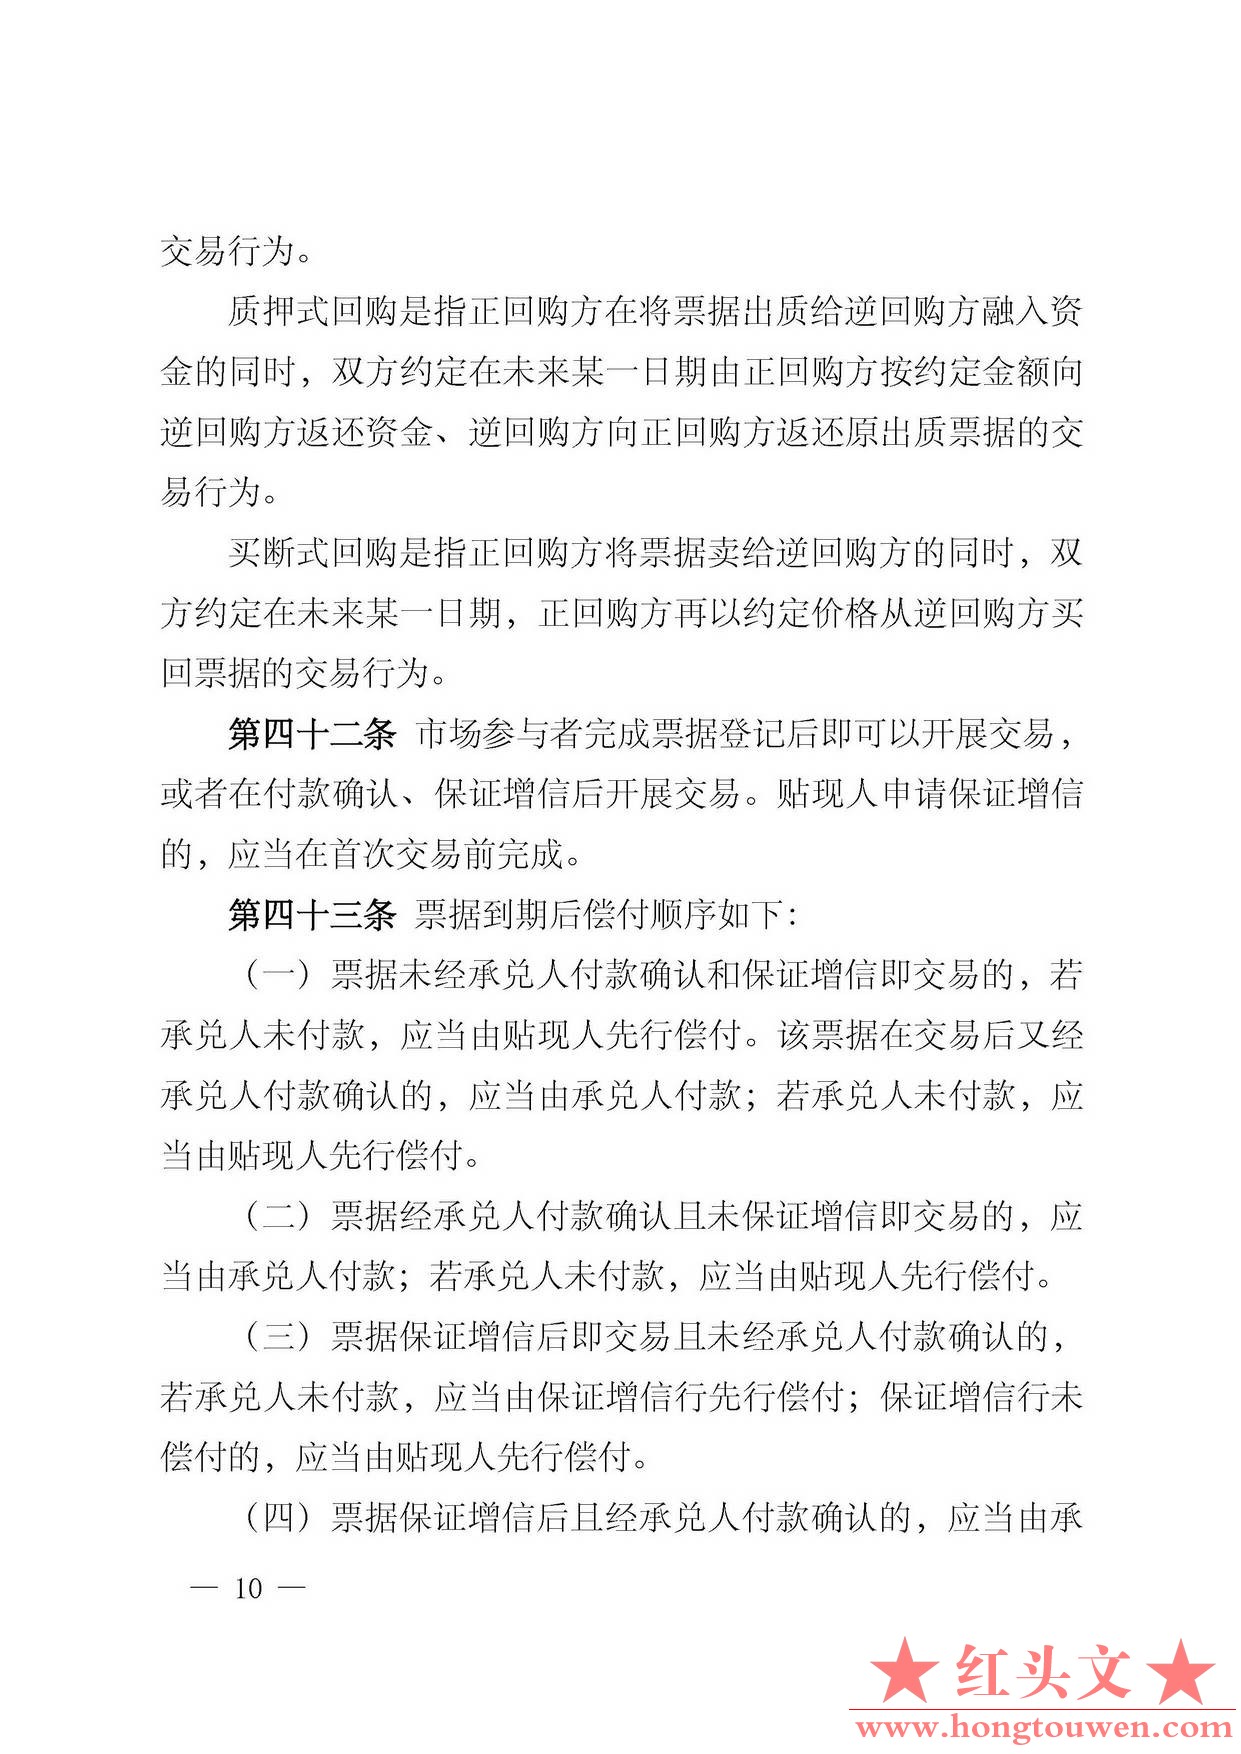 中国人民银行公告[2016]29号-票据交易管理办法_页面_10.jpg